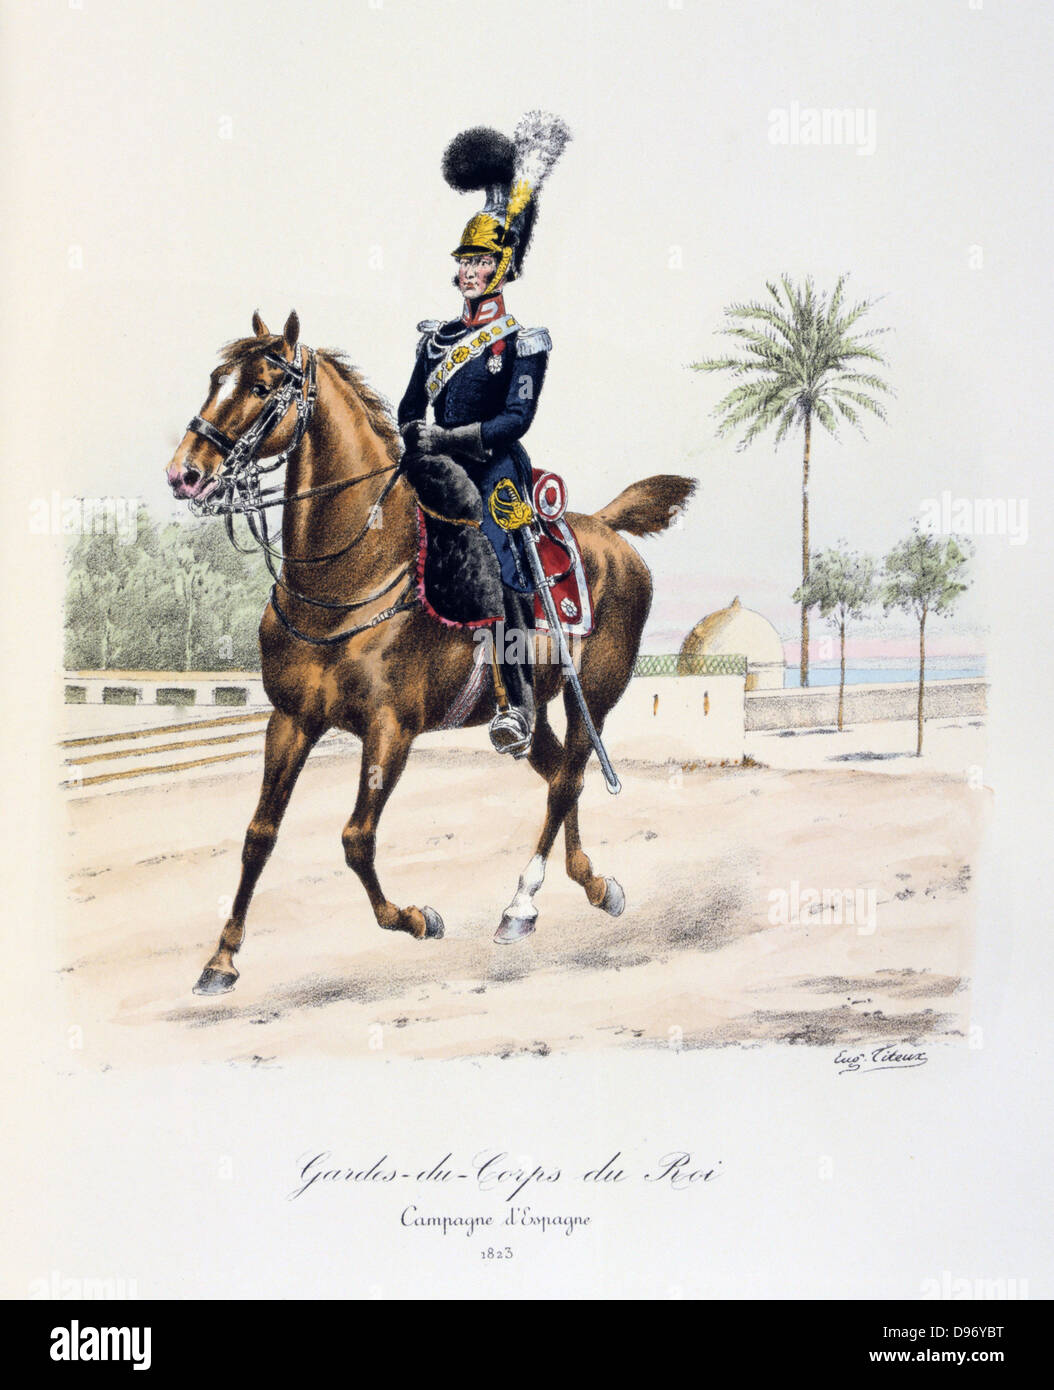 Mounted officer of the Spanish regiment of the Royal guard, 1813. From 'Histoire de la maison militaire du Roi de 1814 a 1830' by Eugene Titeux, Paris, 1890. Stock Photo